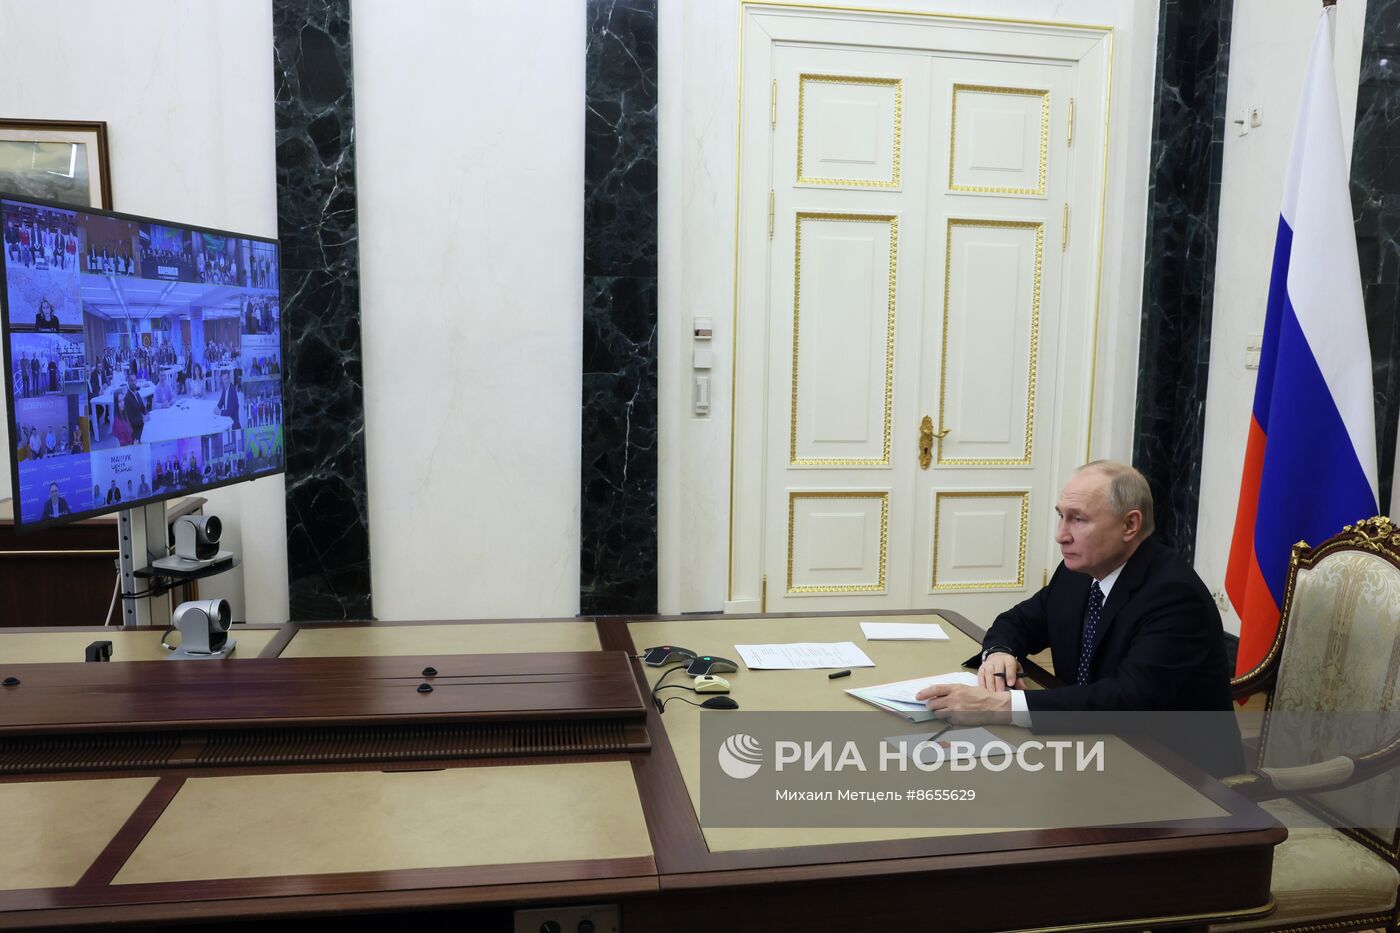 Президент Владимир Путин принял участие в открытии новых молодежных центров в различных регионах страны